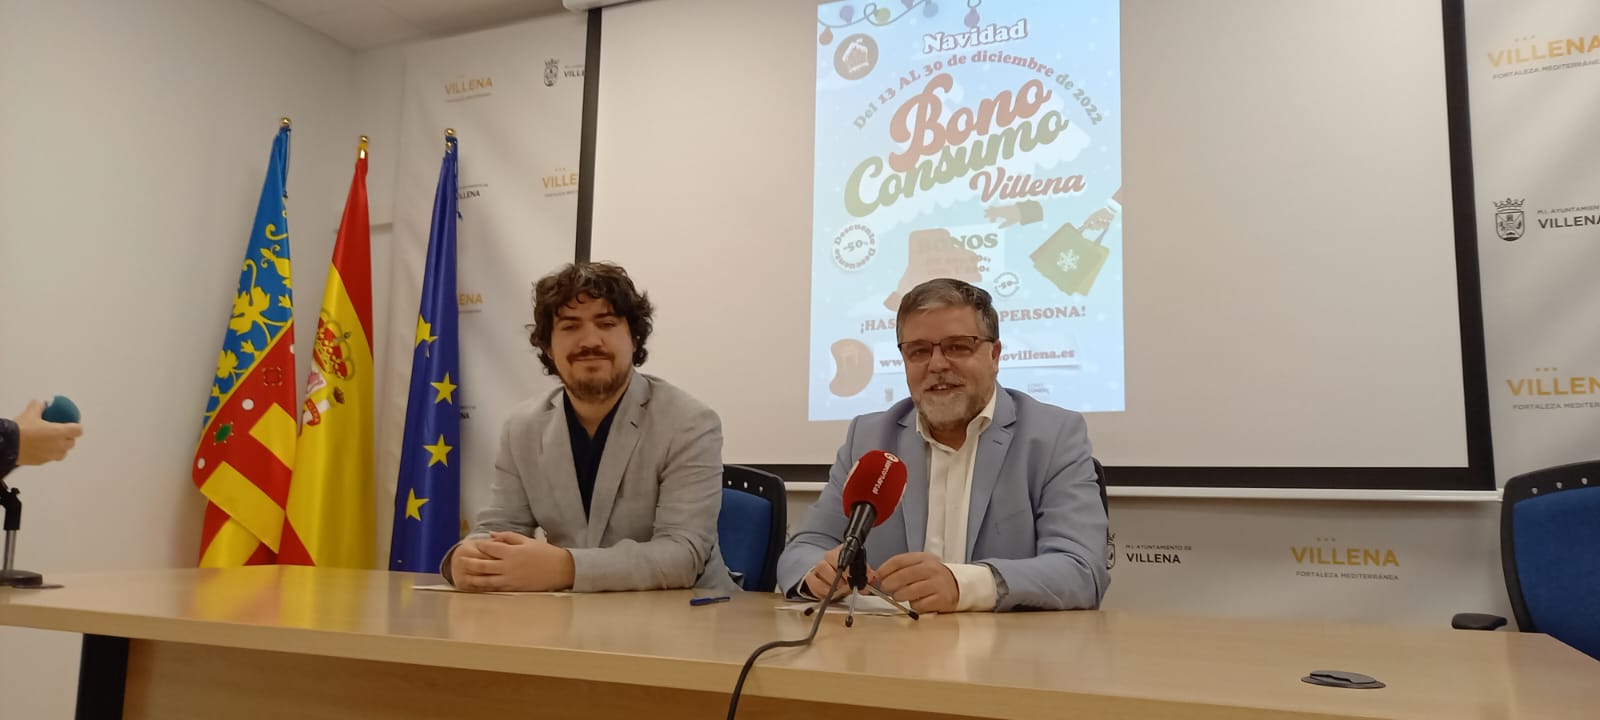 Villena se sumará a la nueva campaña de Bono-Consumo financiada por la Diputación Provincial con 378.000 euros